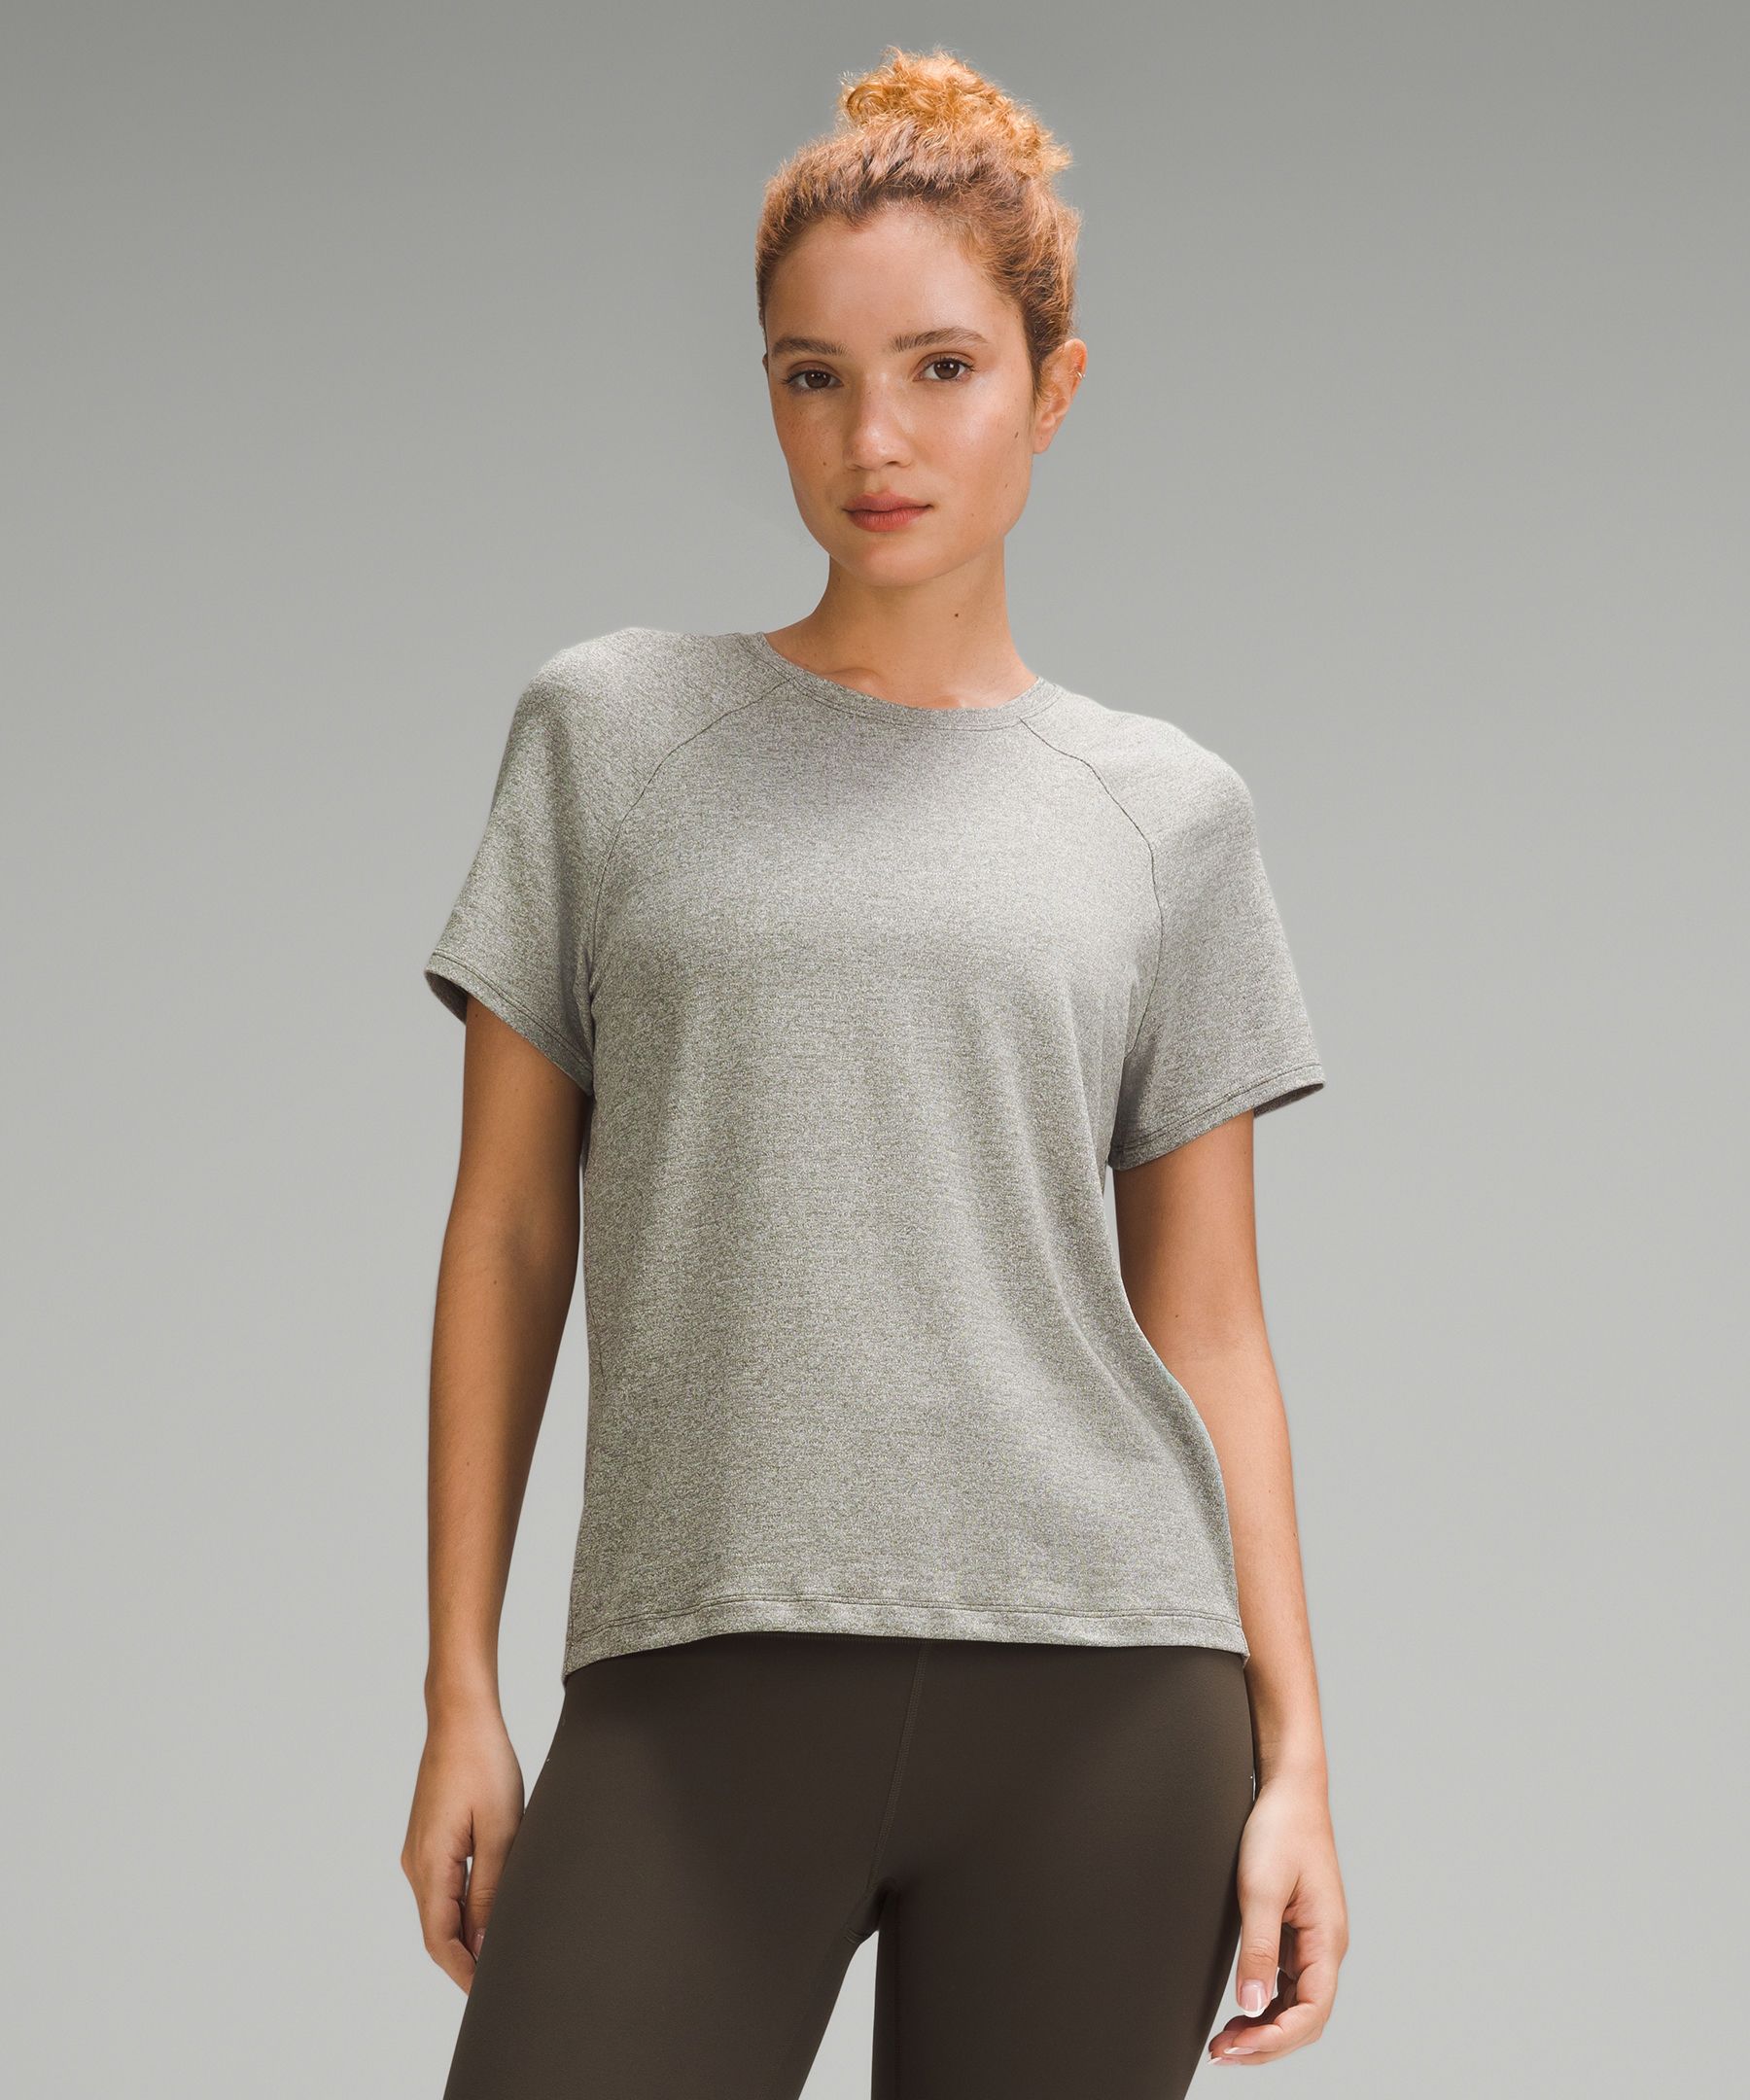 Lu logo Swiftly Breathe With Logo Women Short Sleeve Yoga T-Shirts